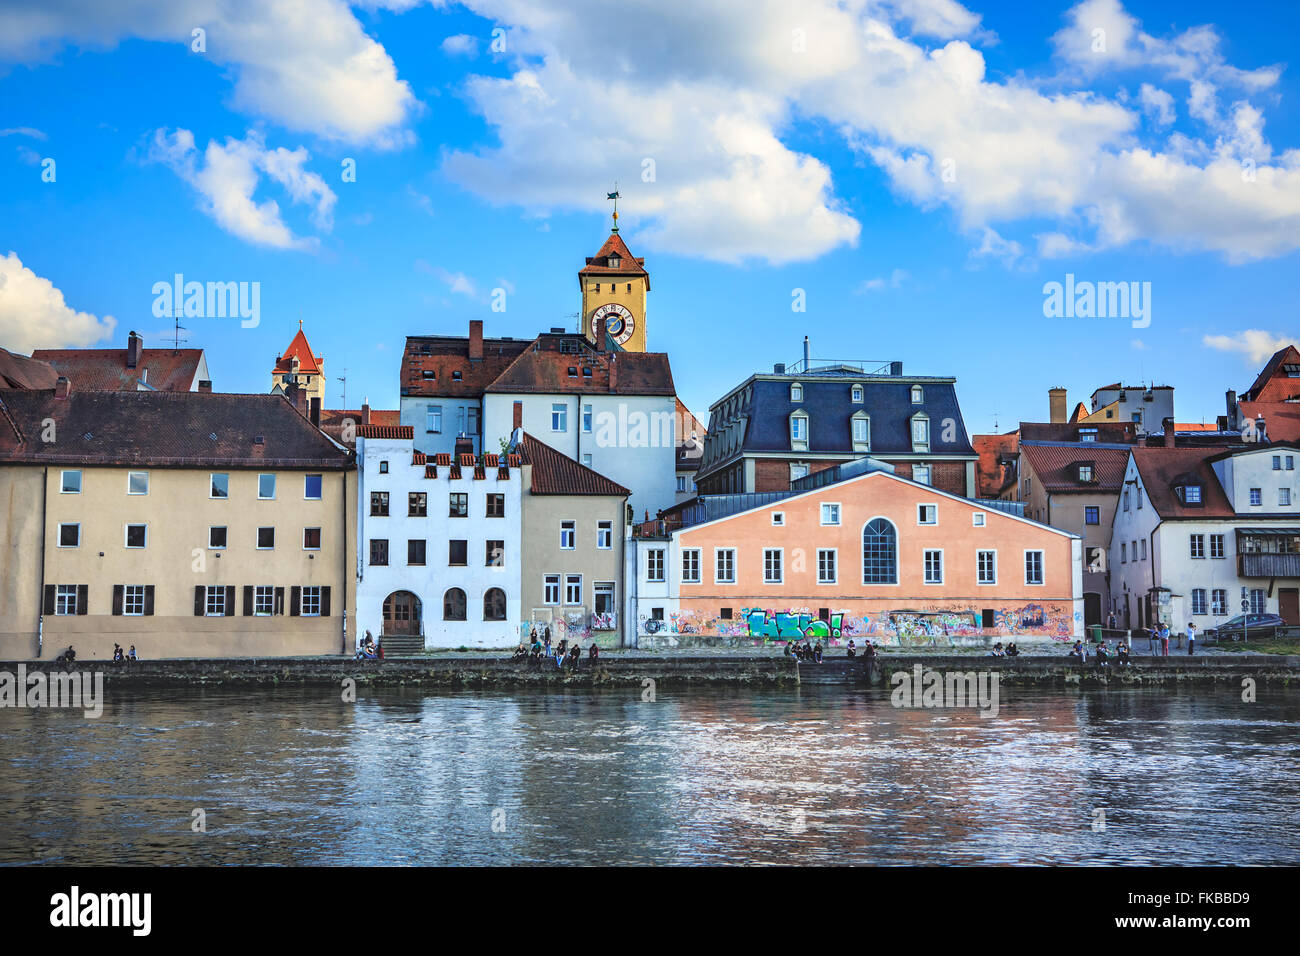 REGENSBURG, BAVARIA, GERMANY - CIRCA JULY, 2015: Town view over Danube river in Regensburg Stock Photo